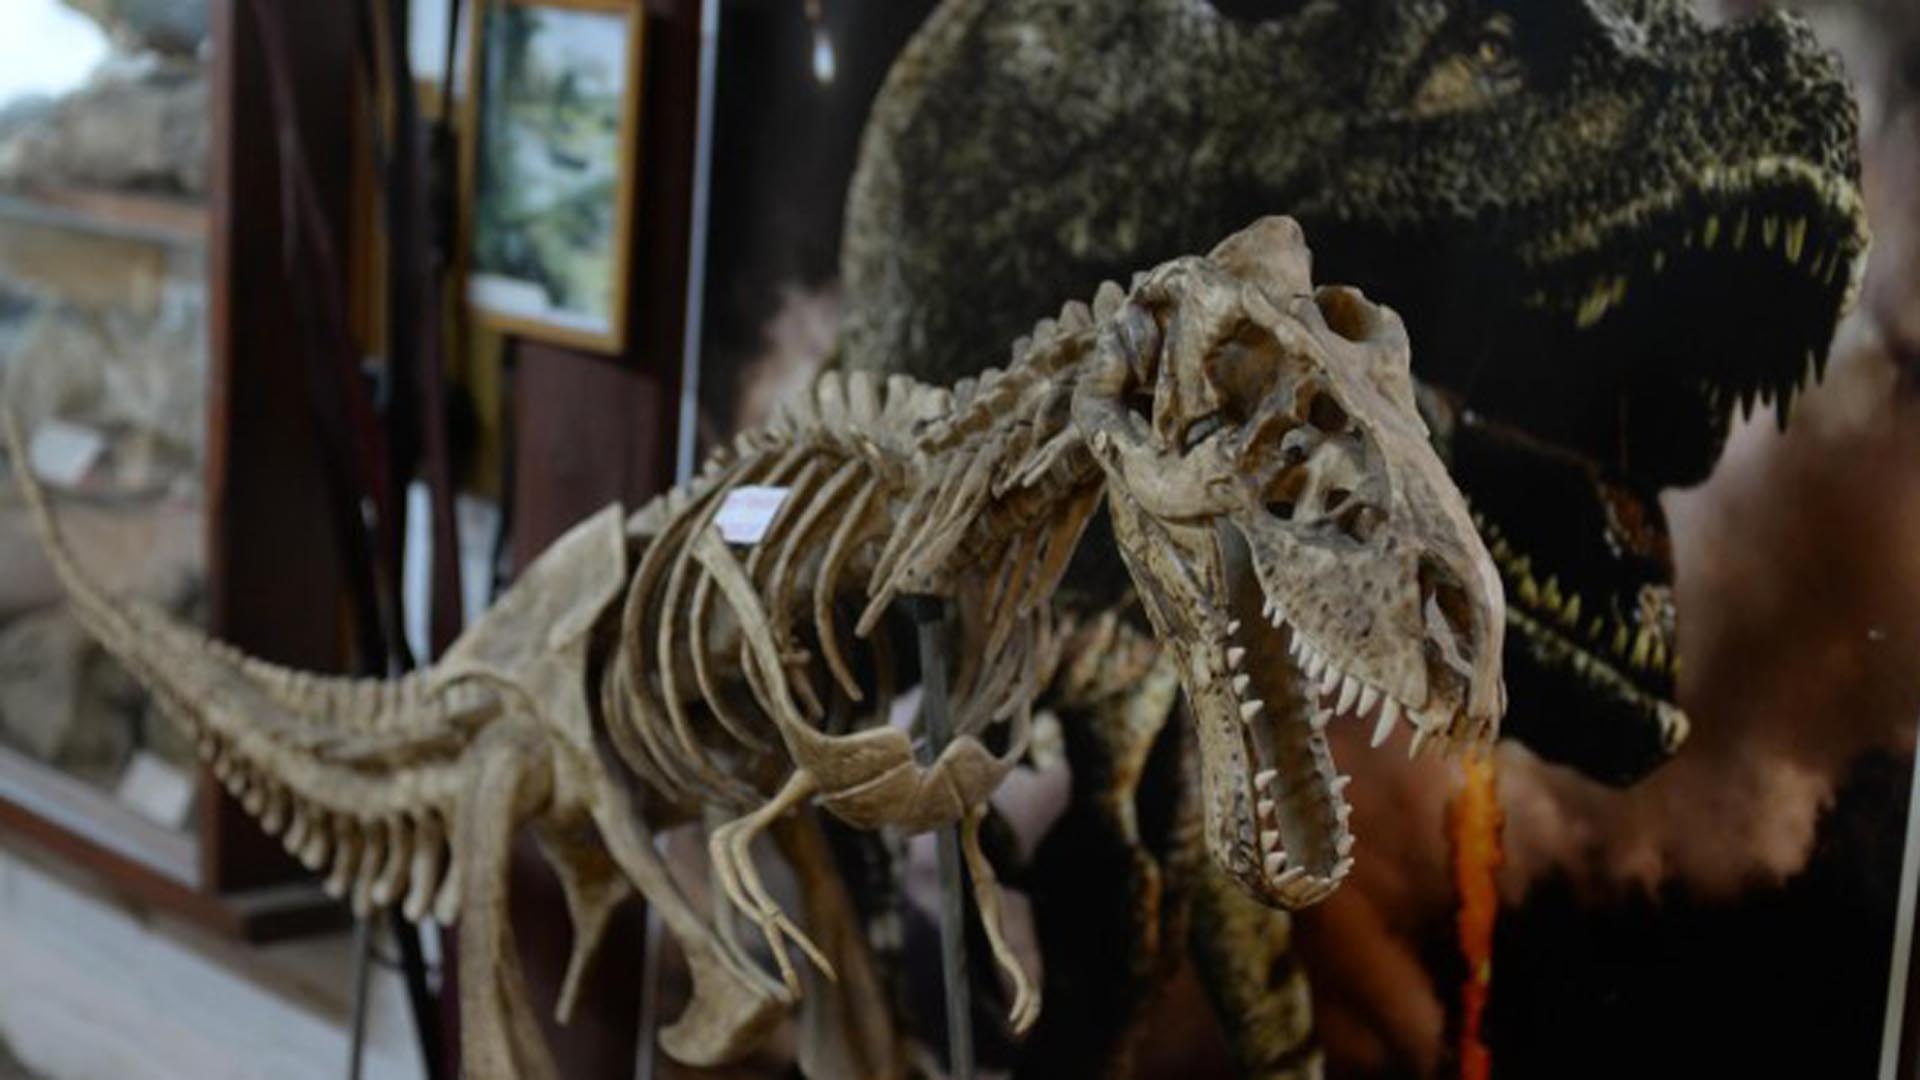 Réplica del Tiranosaurio Rex en exhibición en el  Museo de Geología y Paleontología del Lago Gutiérrez, Argentina  (Foto: Diario Río Negro)